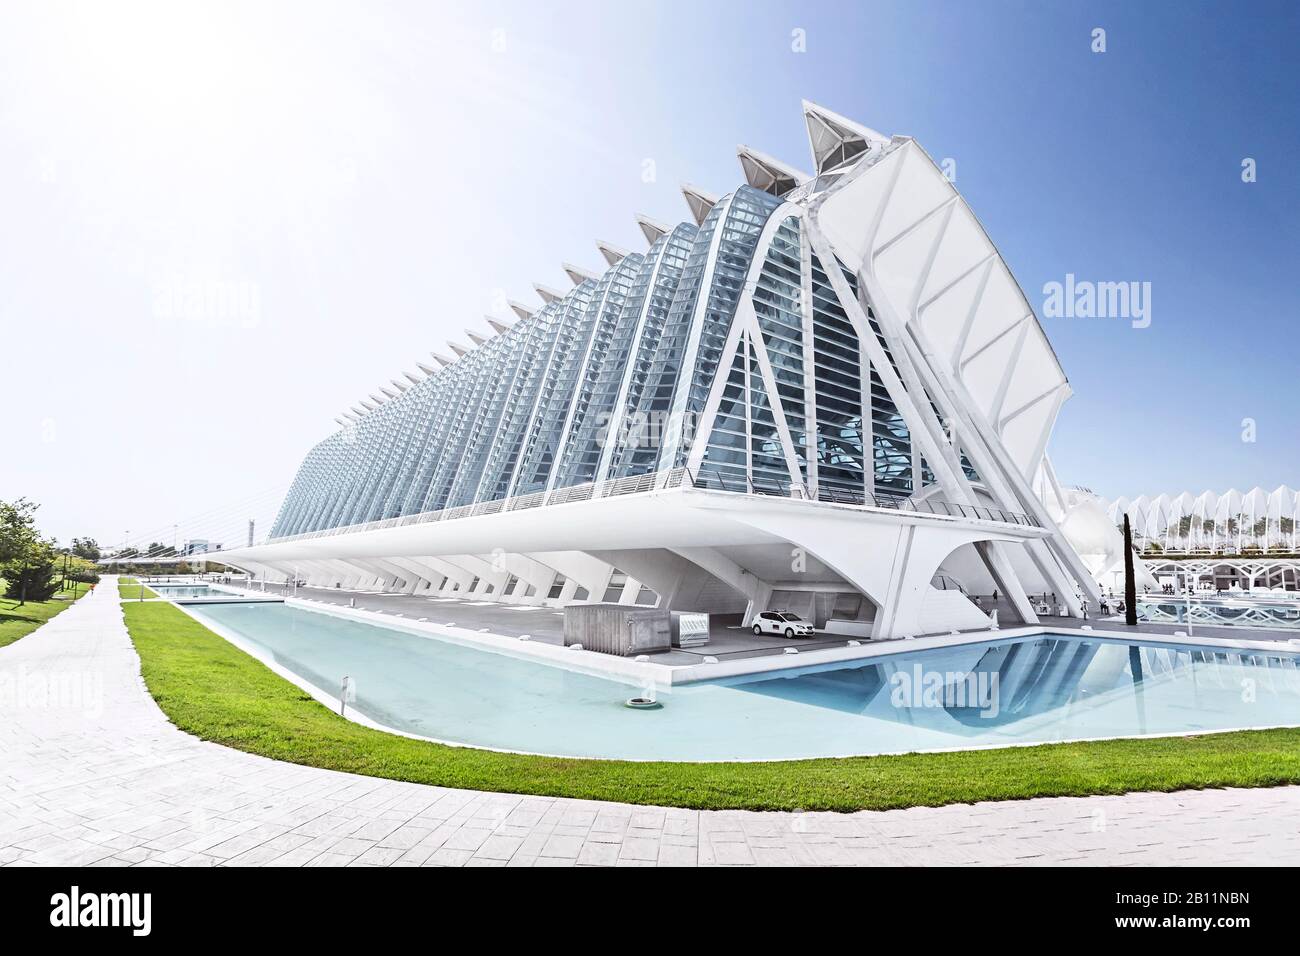 Architektur von Santiago Calatrava, Museo de las Ciencias Principe Felipe, Ciudad de las Artes y las Ciencias, Valencia, Spain Stock Photo